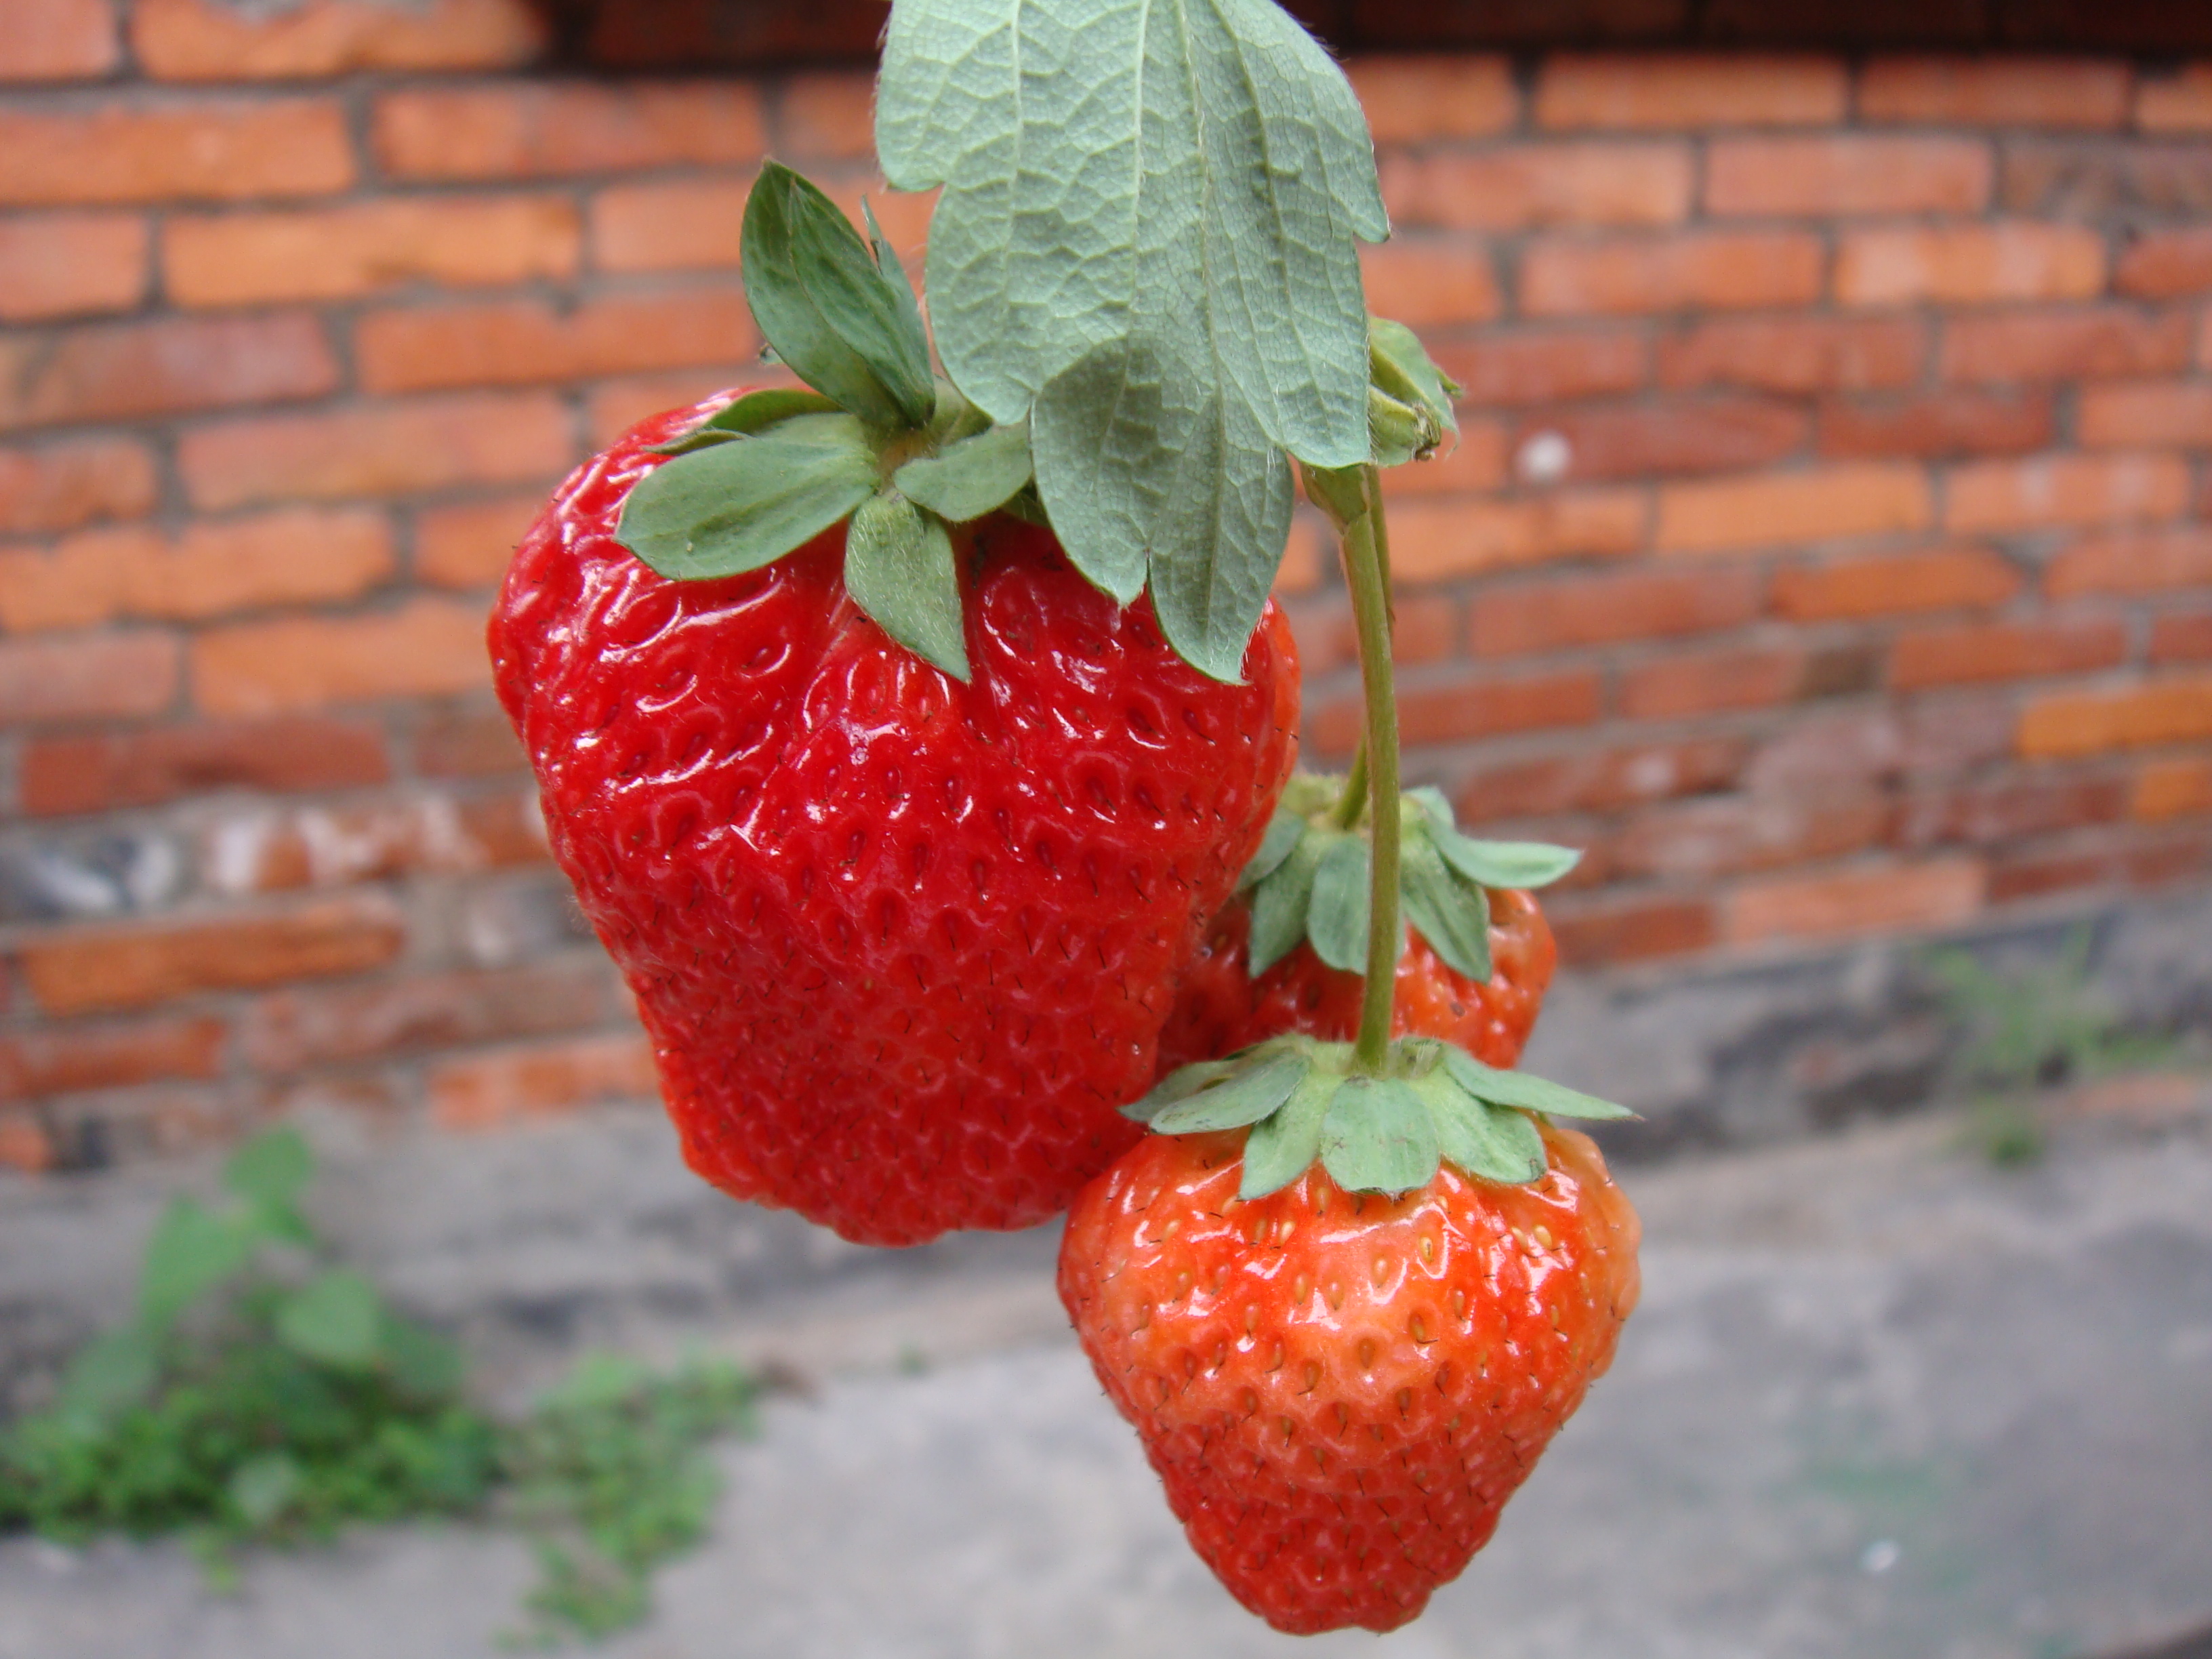 这颗草莓真的好大好大好大滴…哼哼~照片可能看不出来,大的那颗足有